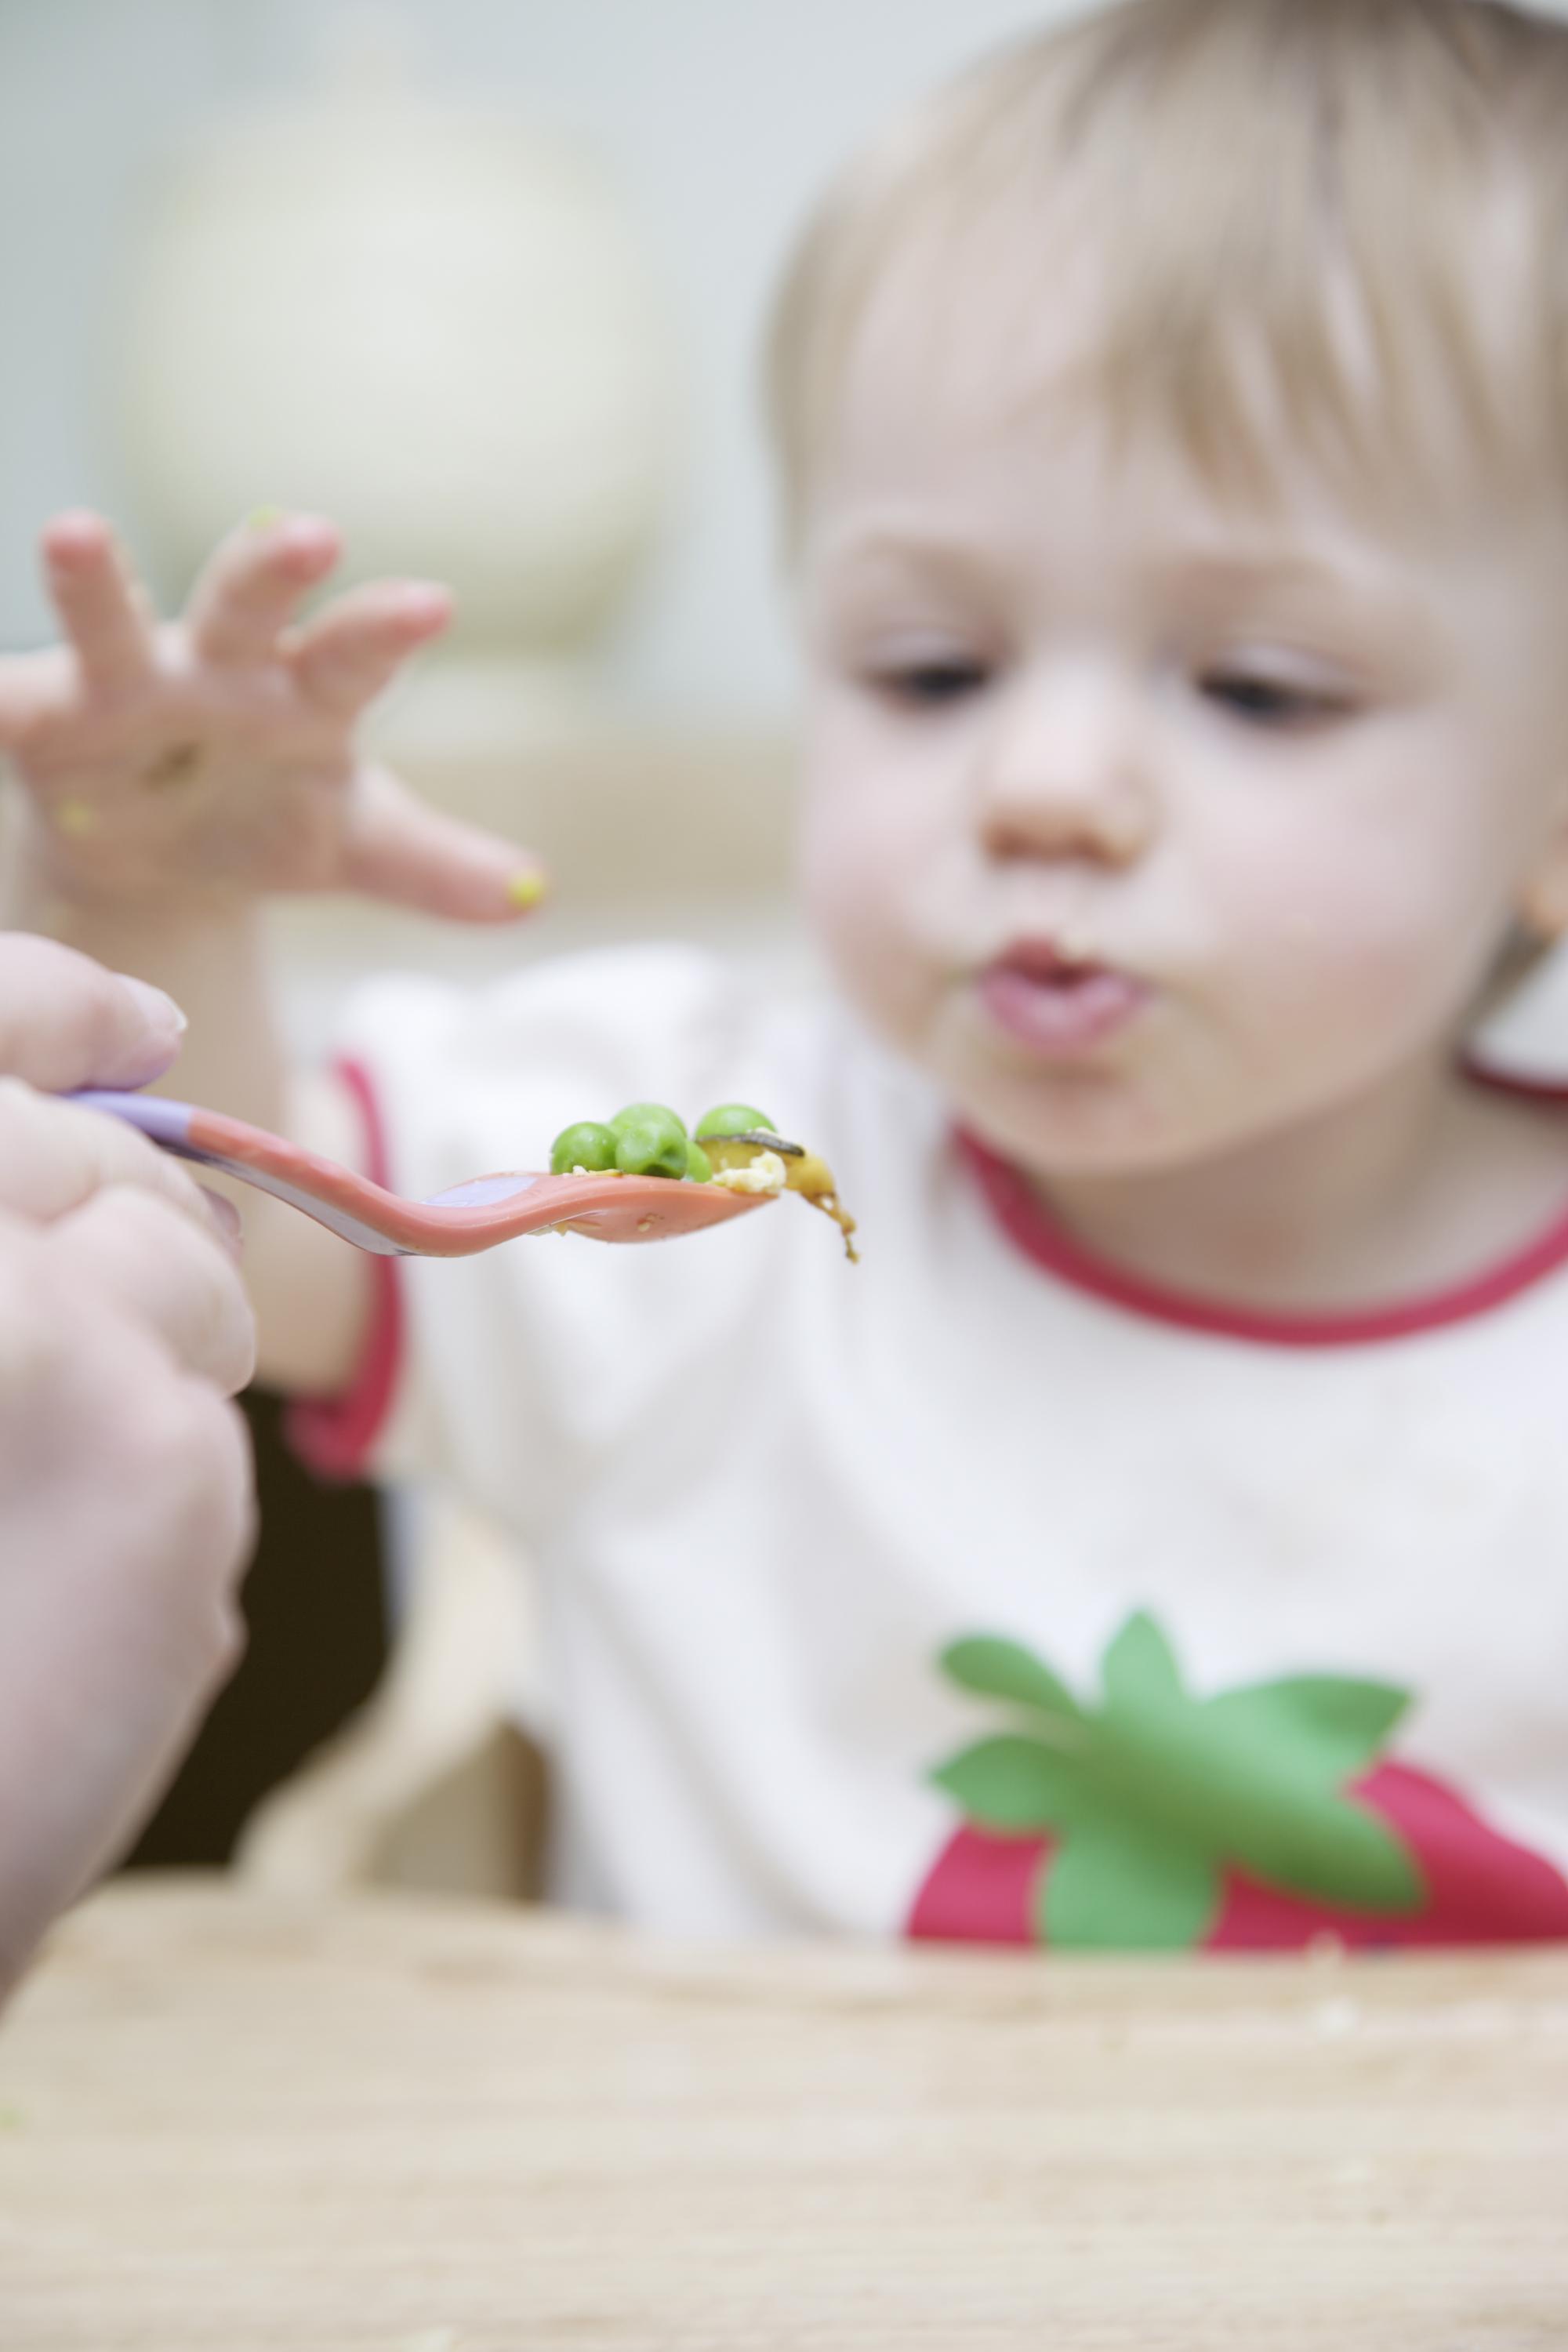 Bébé mangeant des légumes verts